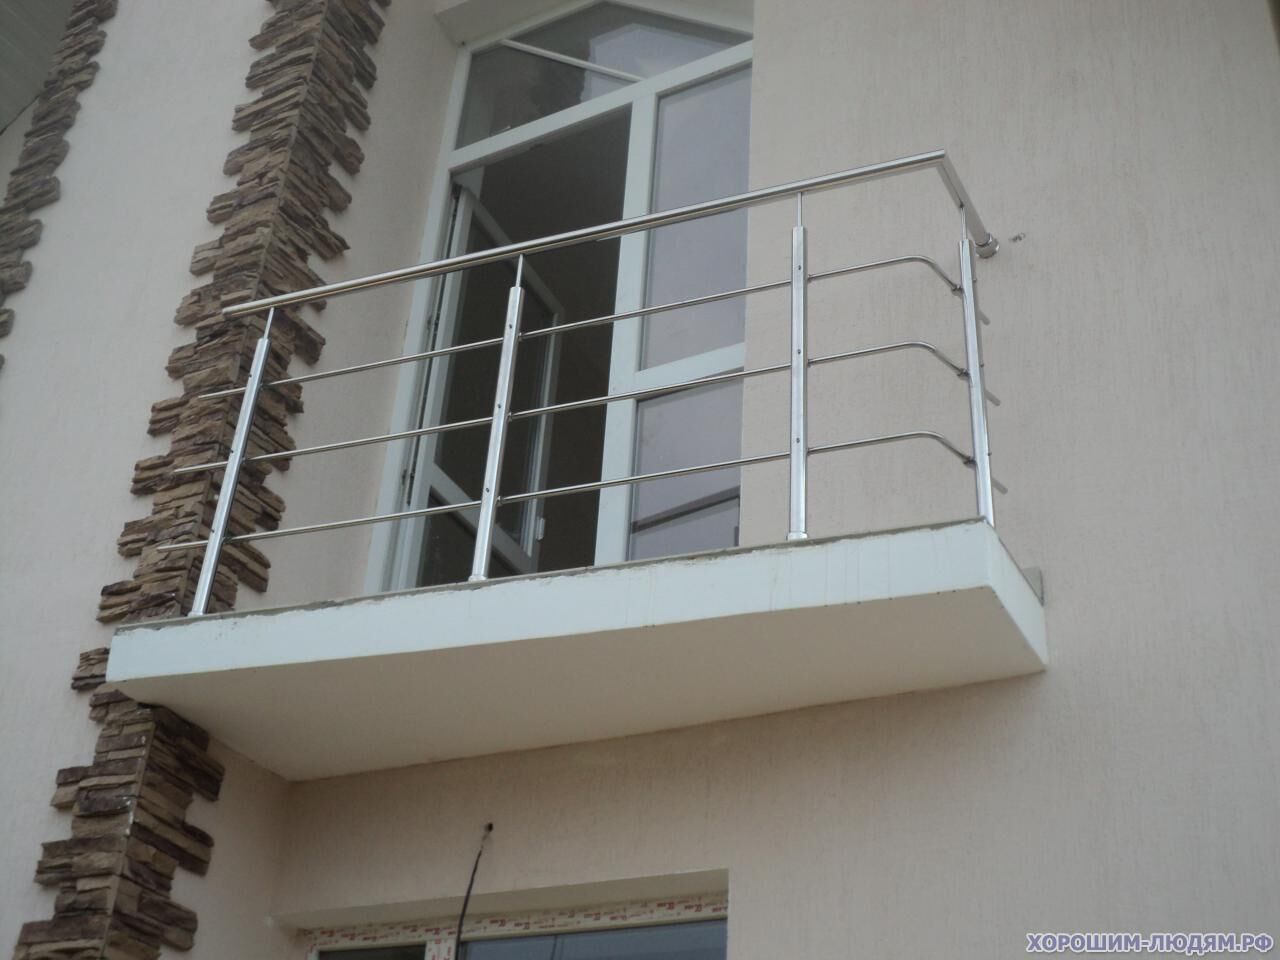 Перильное ограждение на балкон, металлическое, сварное, из нержавеющей стали (304 марка)